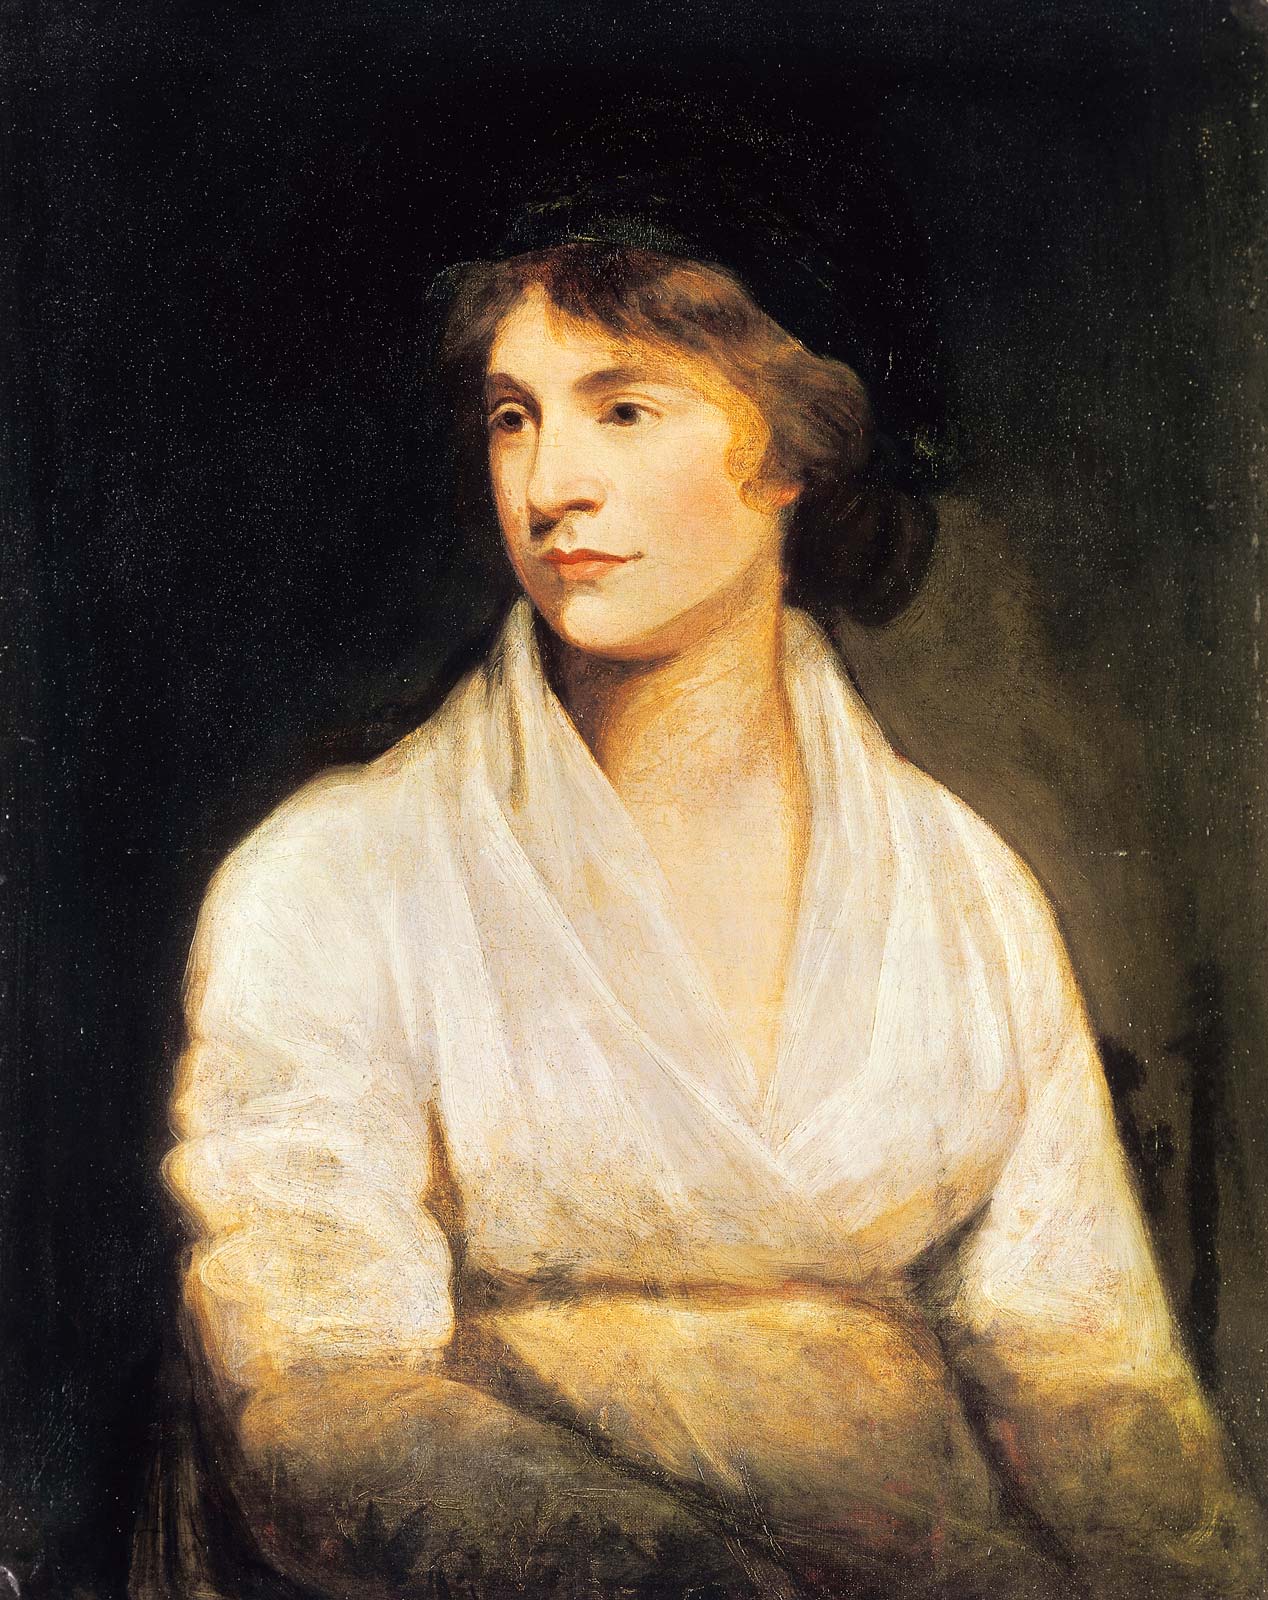 Η Mary Wollstonecraft, πίνακας του John Opie